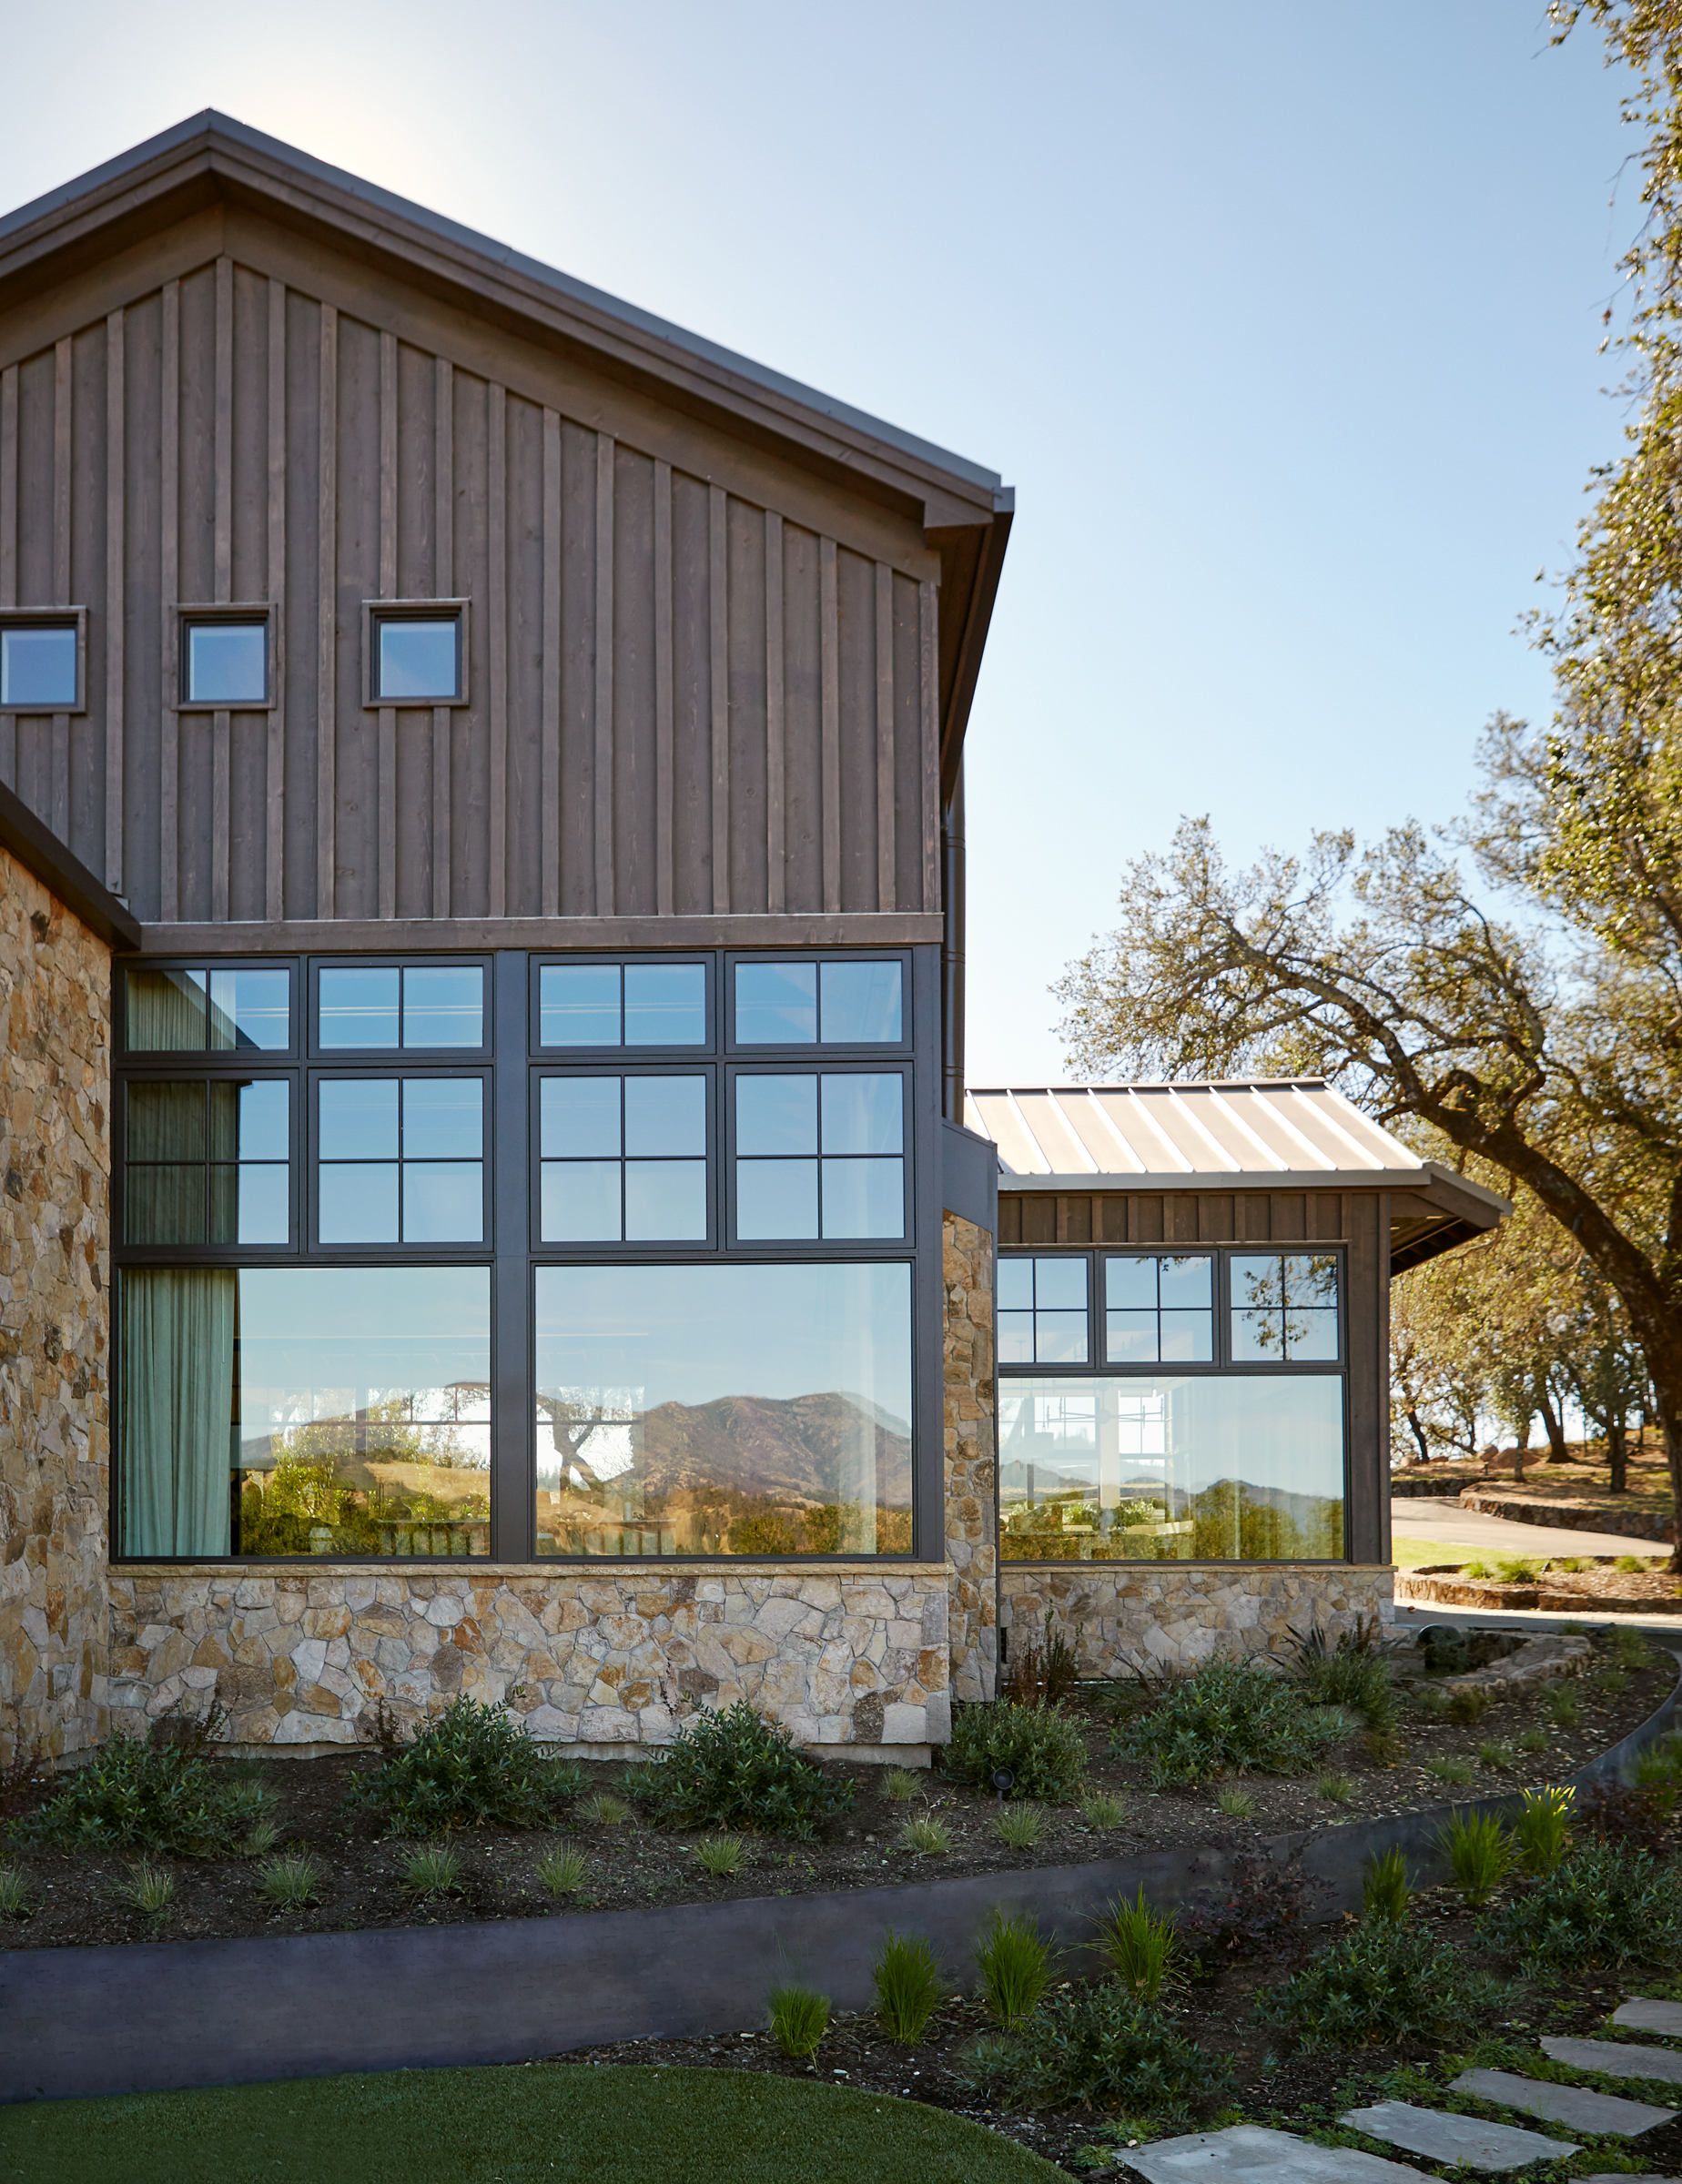 Calistoga Estate I Windows - Residential Architecture Napa Sonoma County